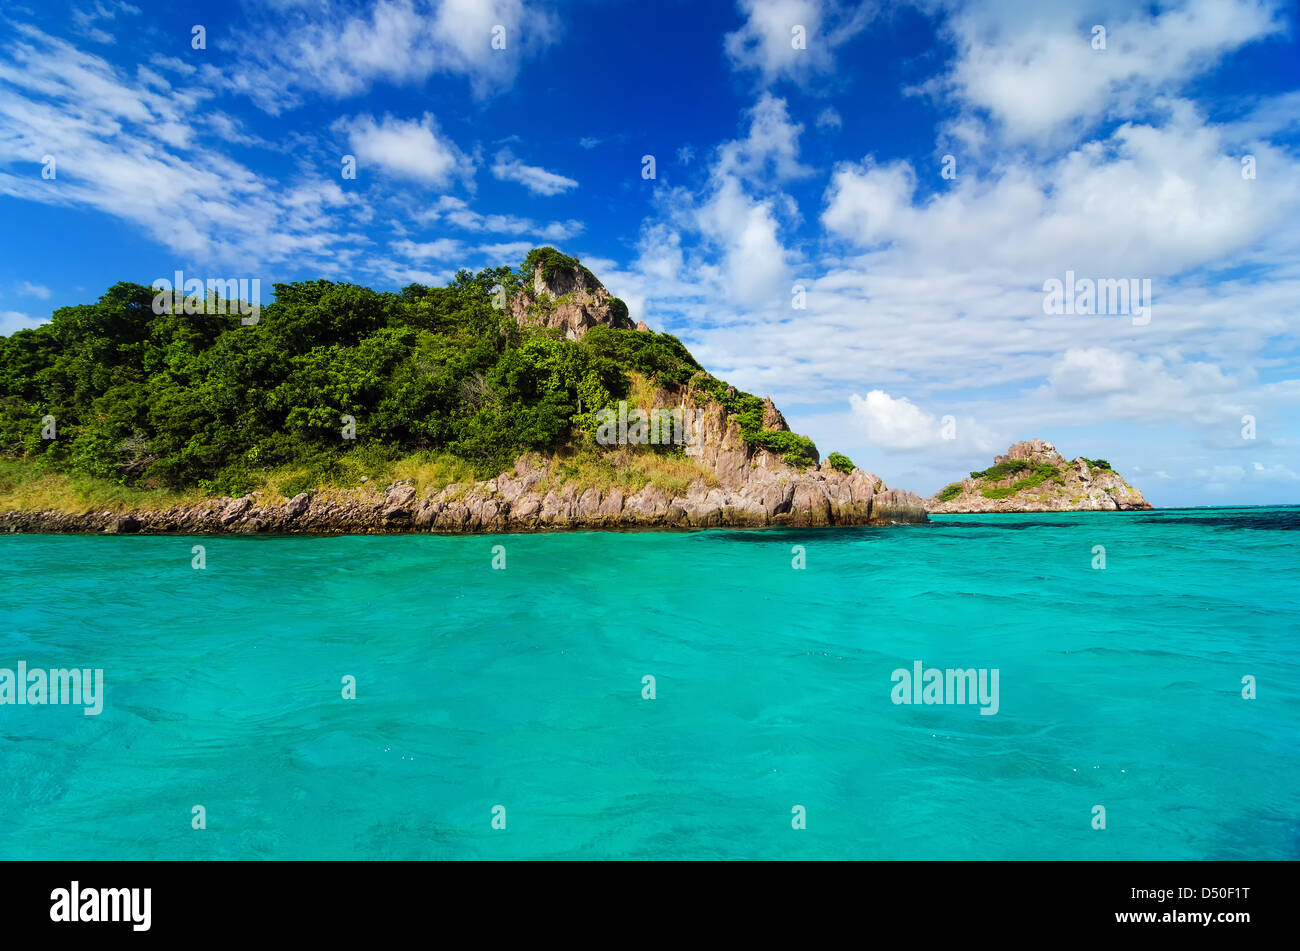 Bella isola deserta circondata da acque blu turchese del Mar dei Caraibi Foto Stock